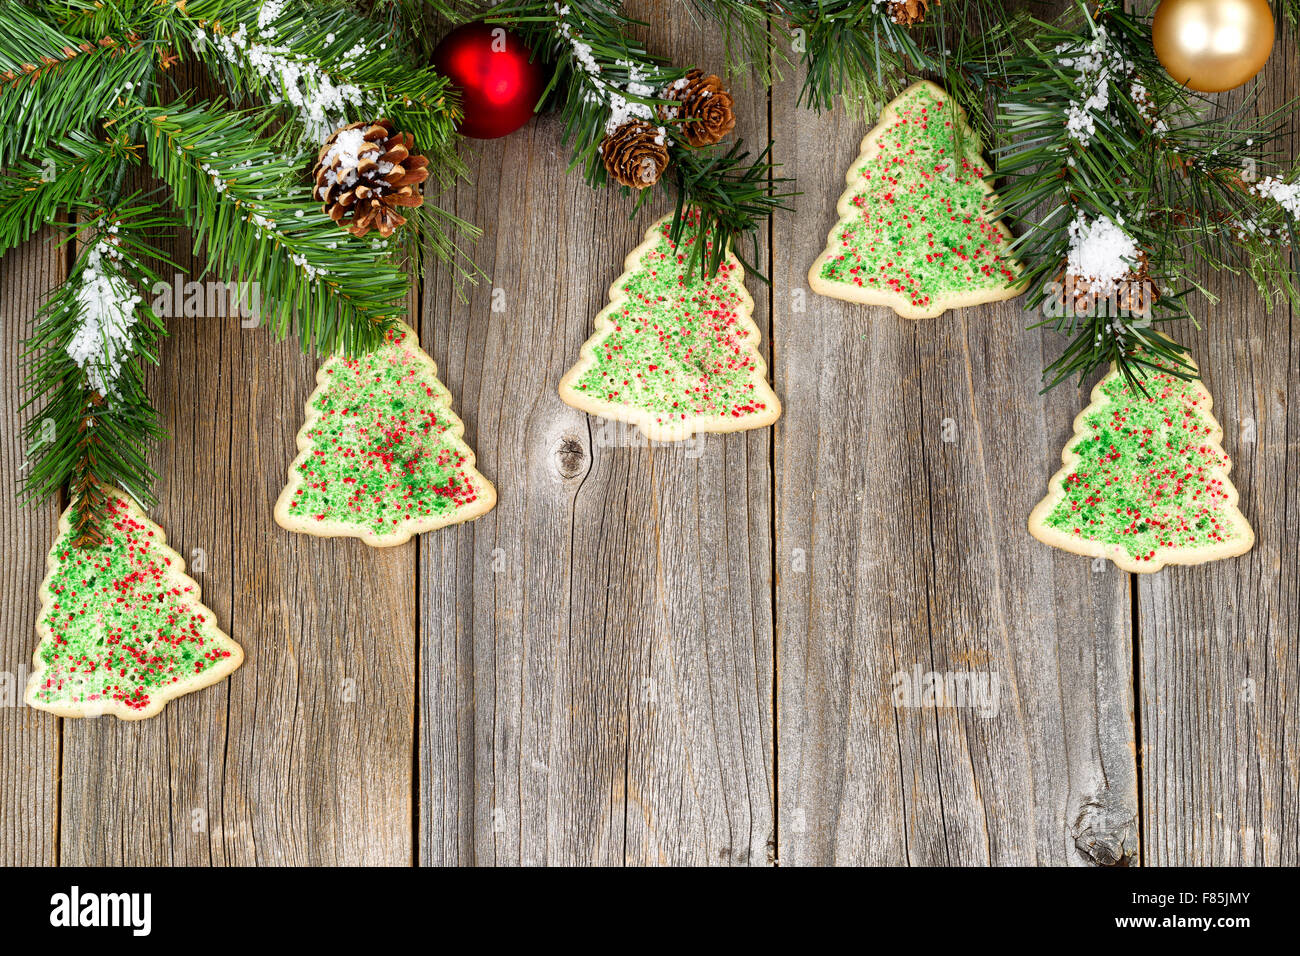 Angle de vue élevé en forme d'arbre avec des branches de conifères cookies, pommes de pin, de neige et ornements sur bois rustique. Banque D'Images